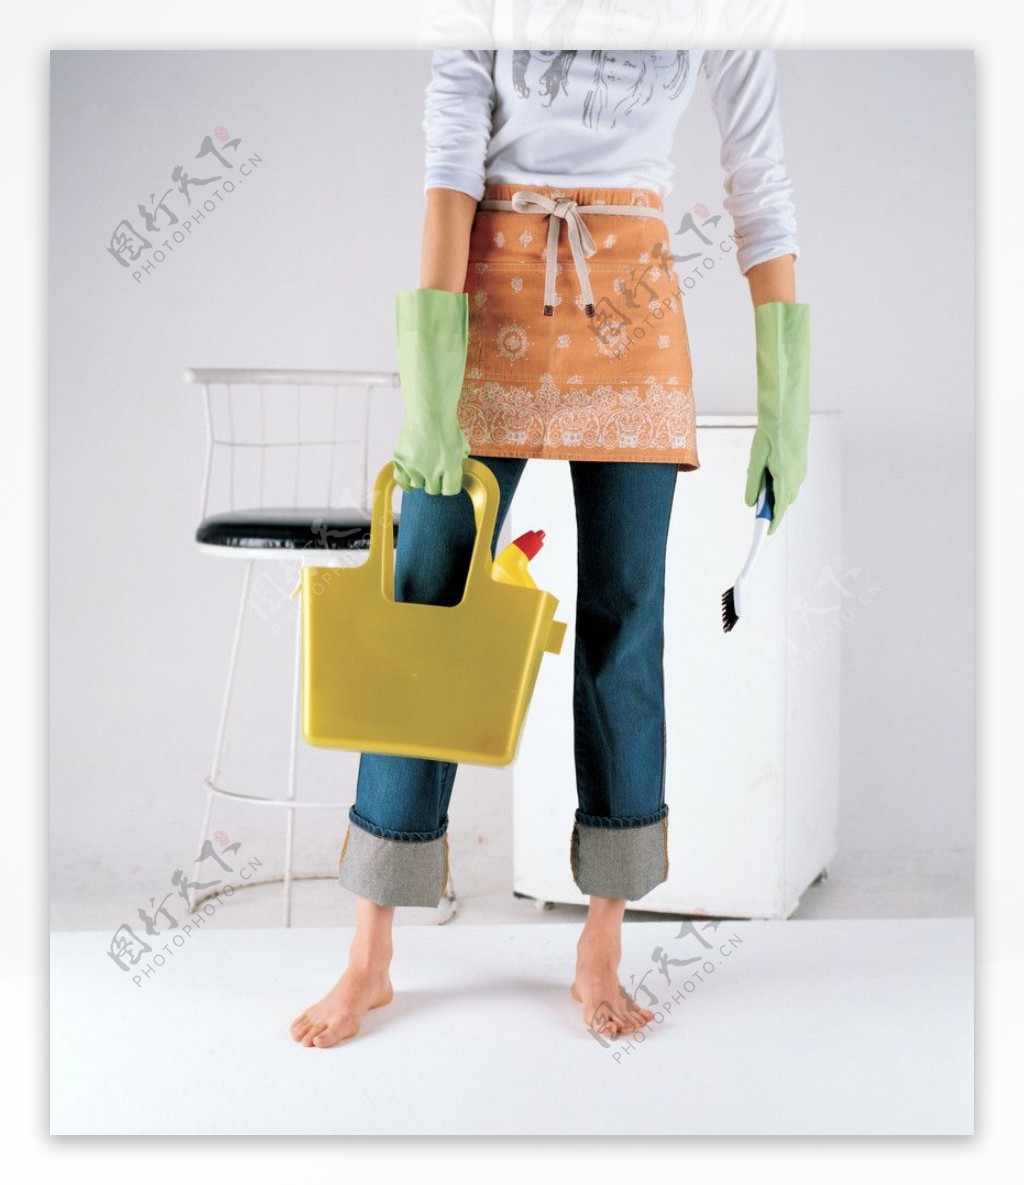 清洁工刷子水桶牛仔裤洗衣机图片素材图库